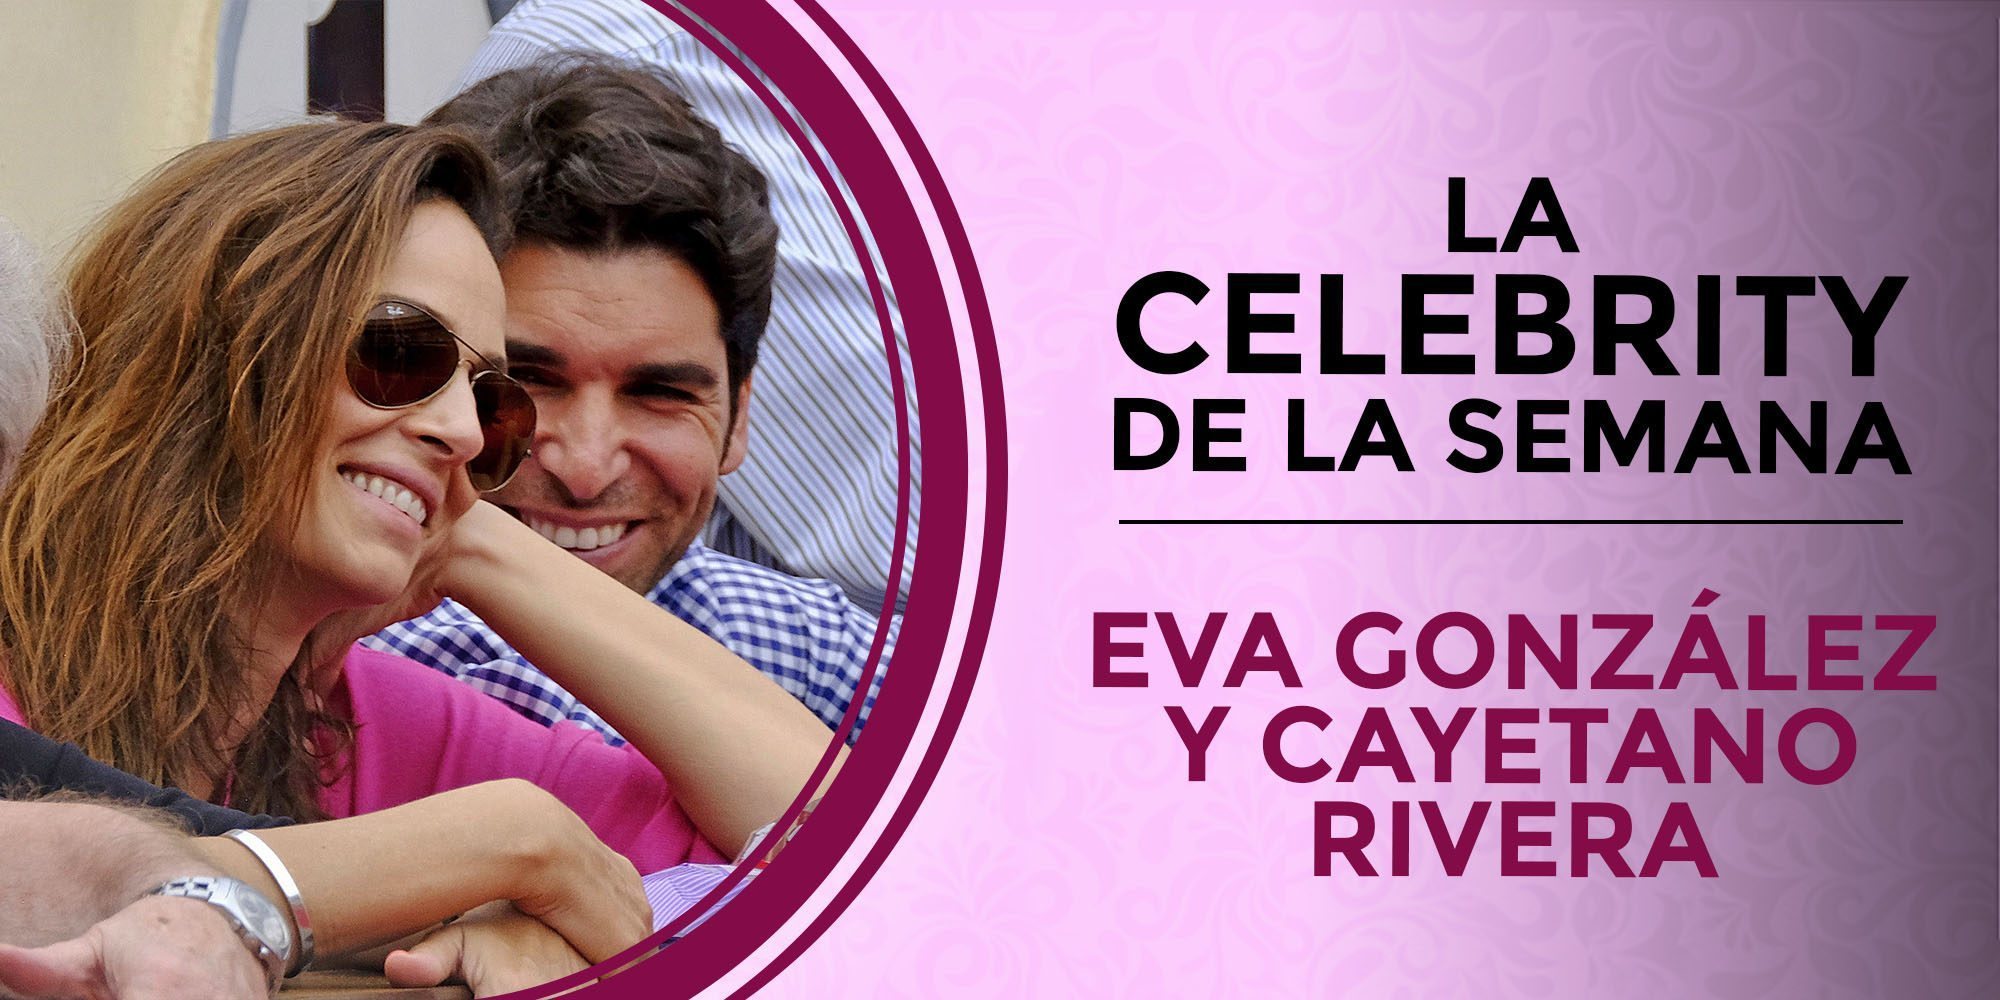 Cayetano Rivera y Eva González, las celebrities de la semana por el nacimiento de su hijo